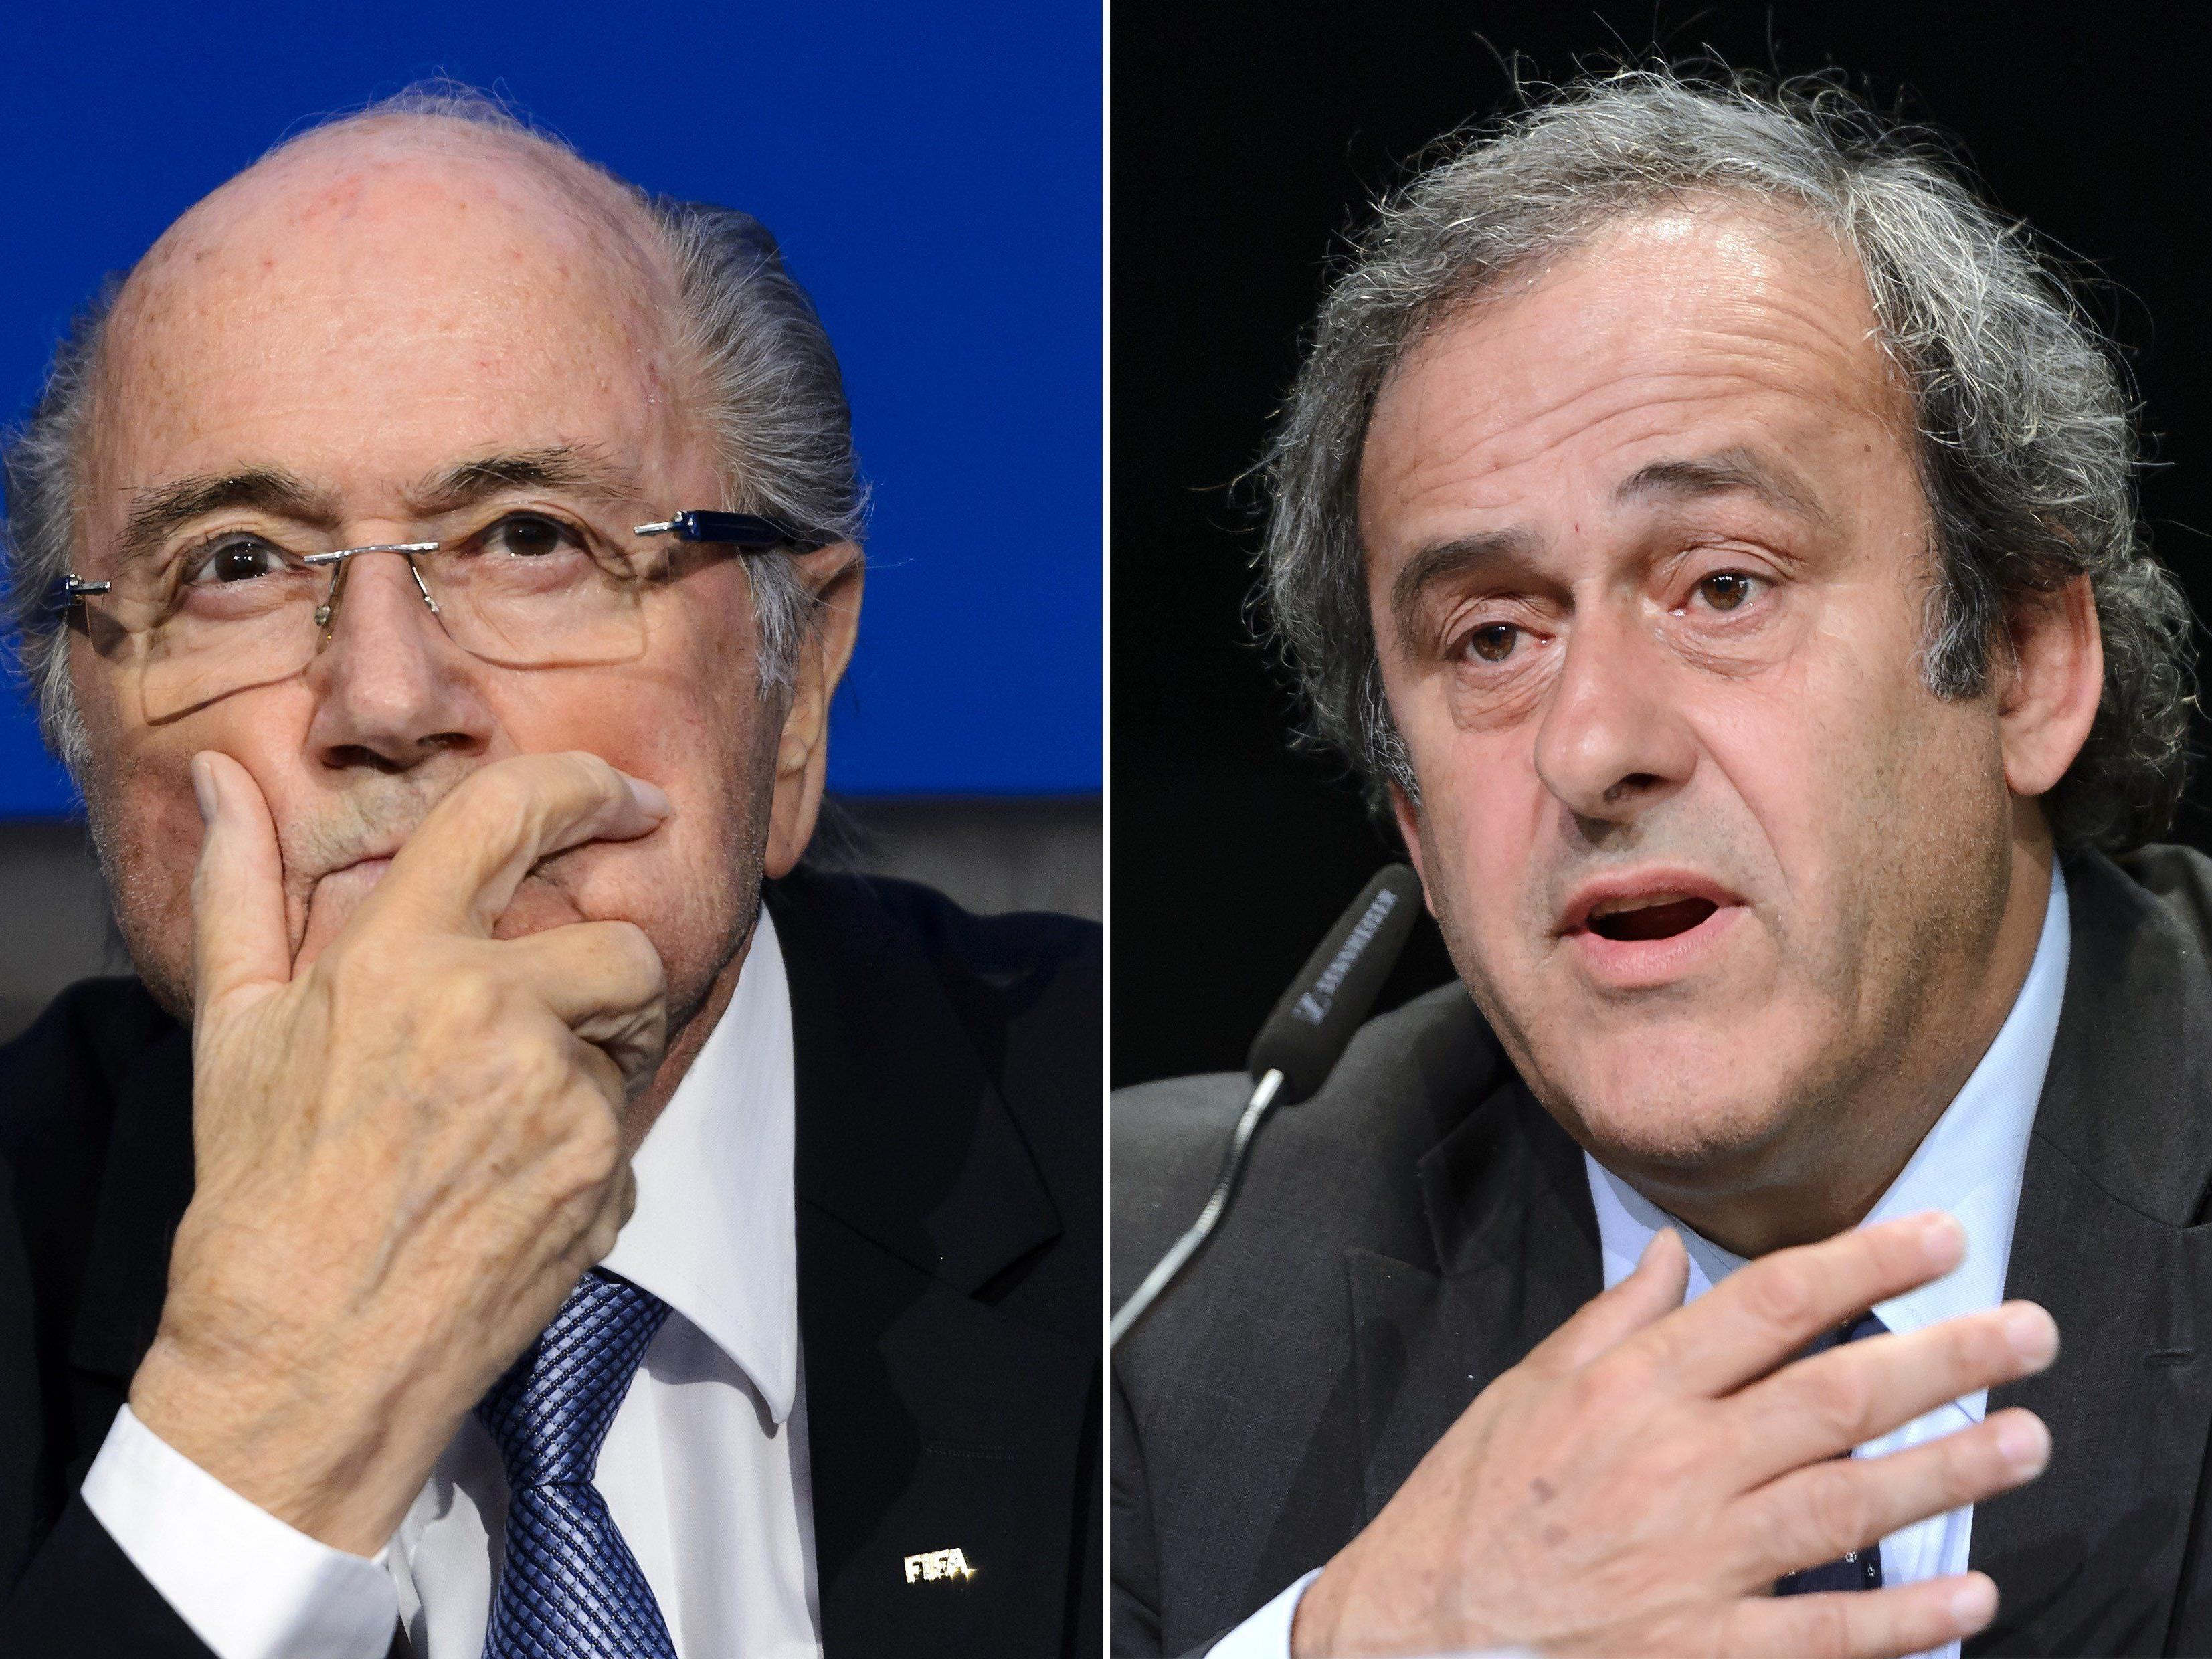 Suspendierter UEFA-Präsident Platini fehlt auf Kandidatenliste - Blatter-Nachfolger wird am 26. Februar 2016 gewählt.